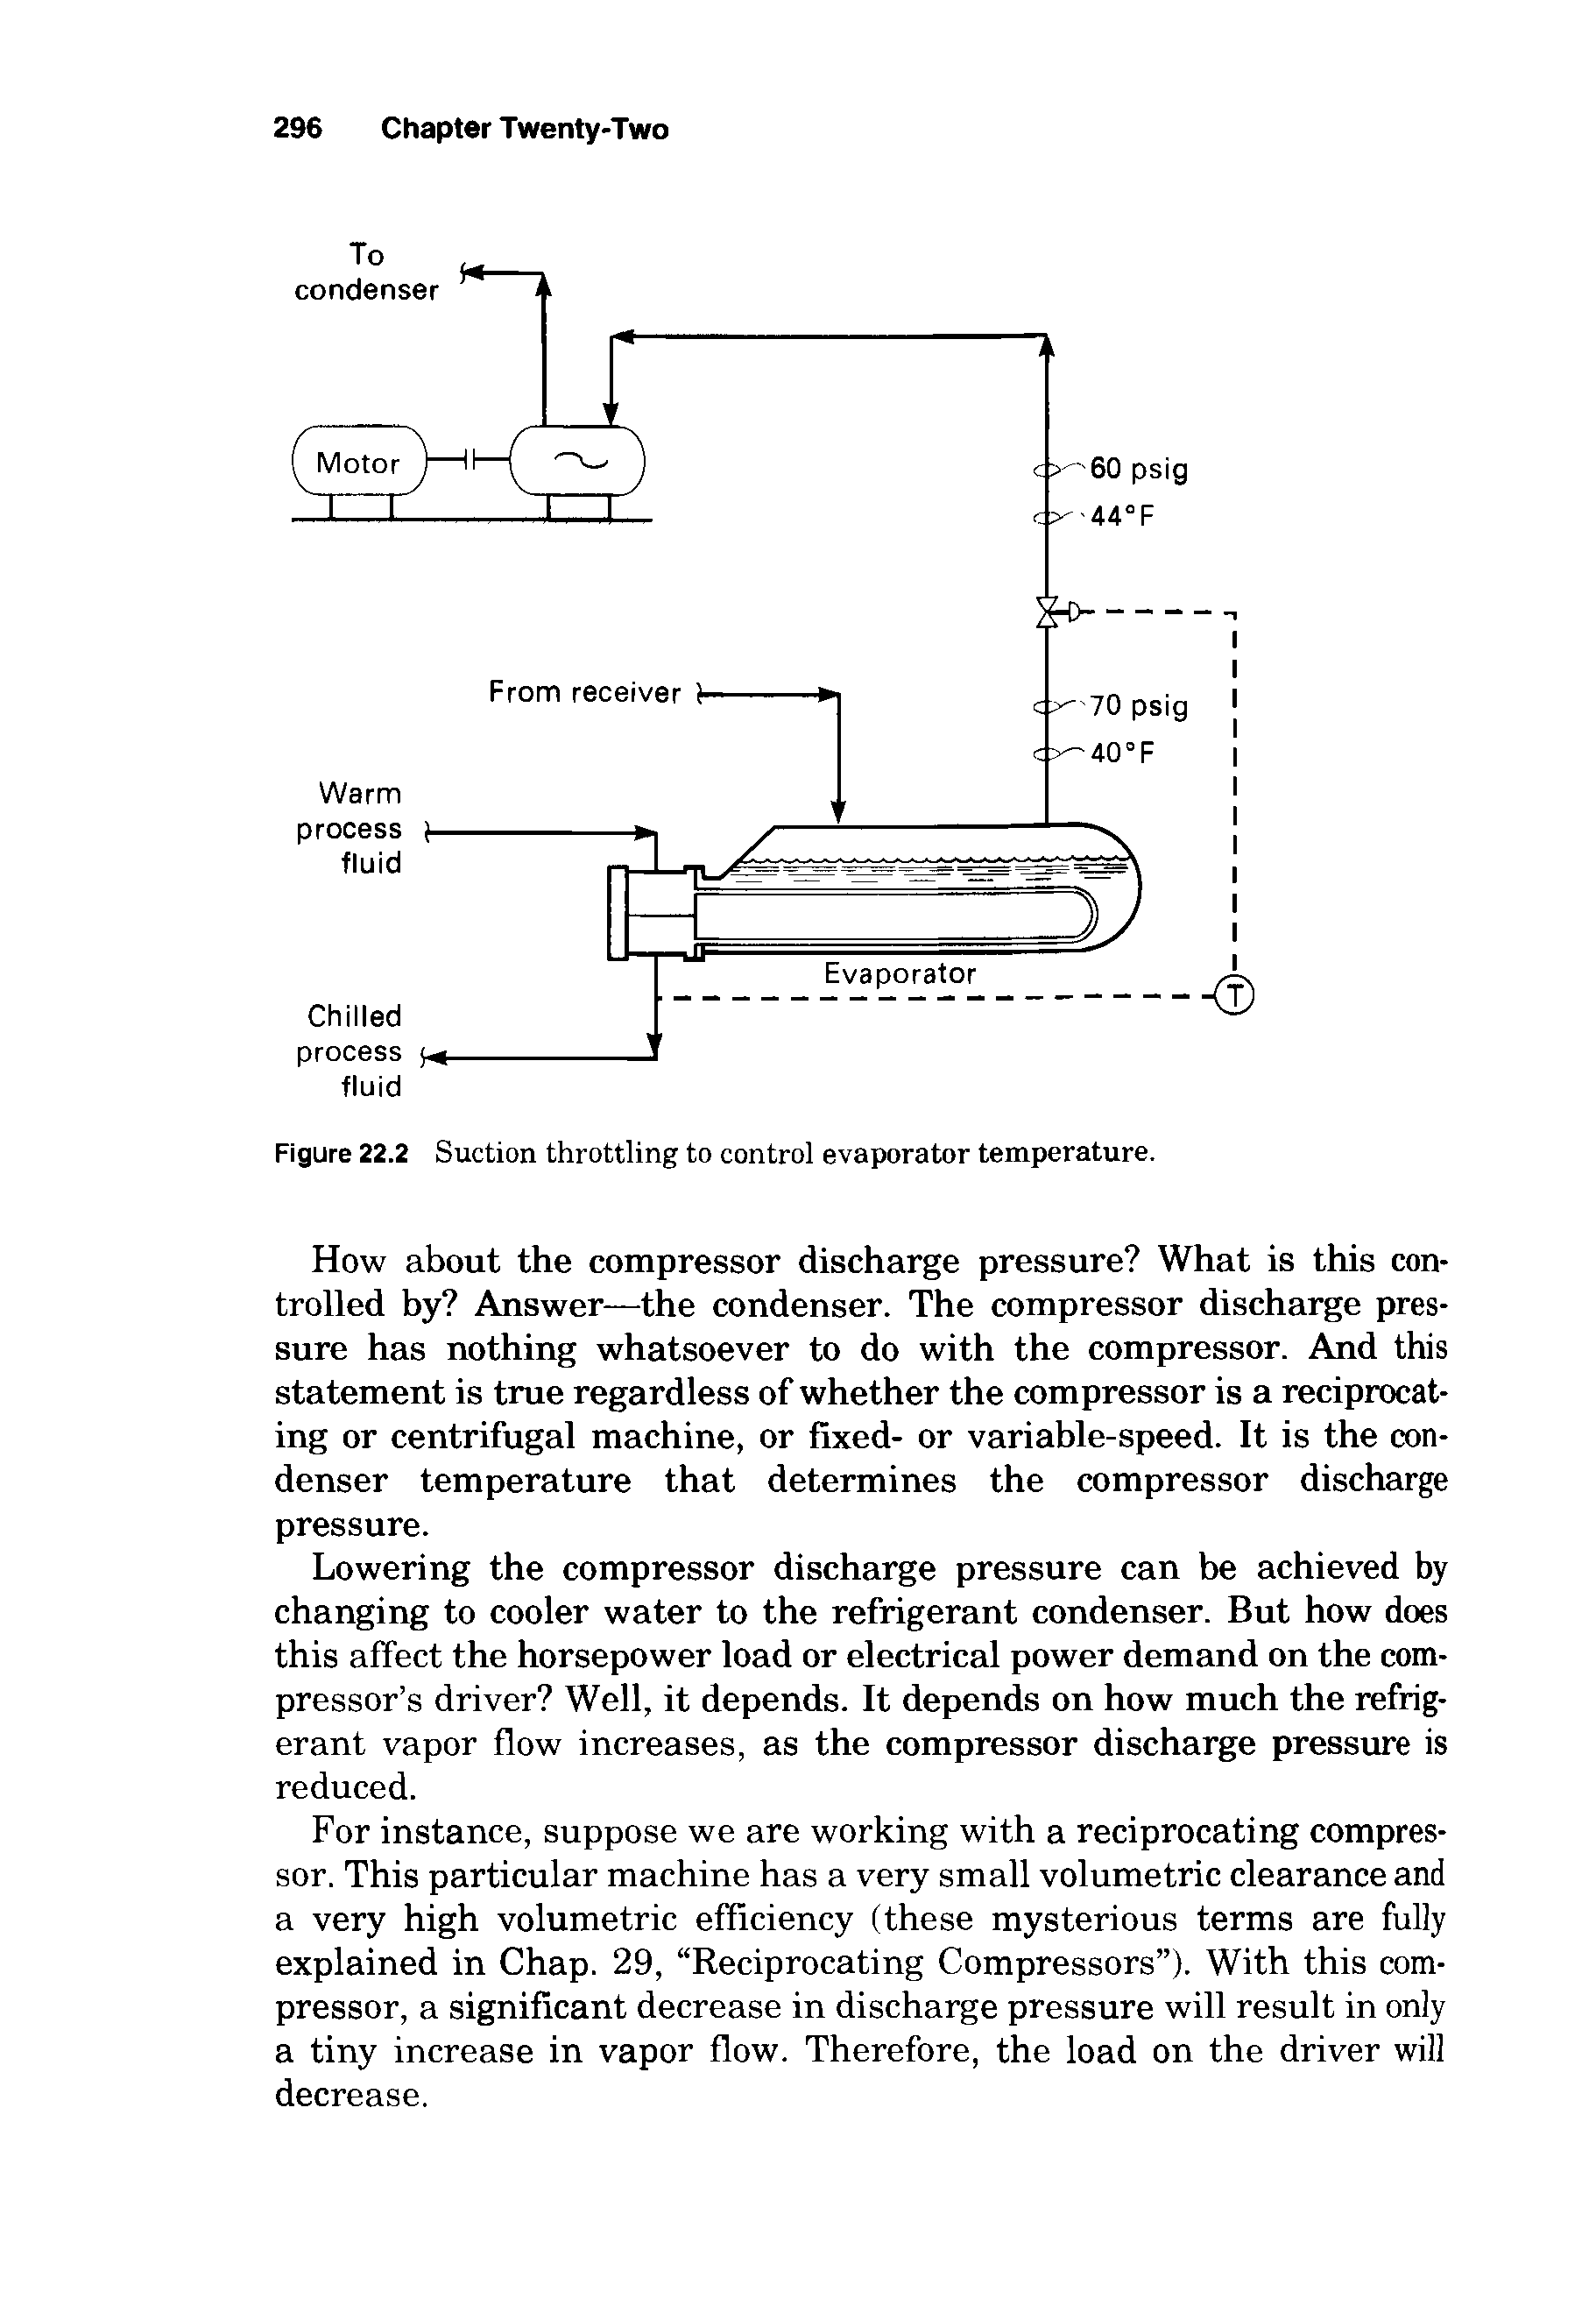 Figure 22.2 Suction throttling to control evaporator temperature.